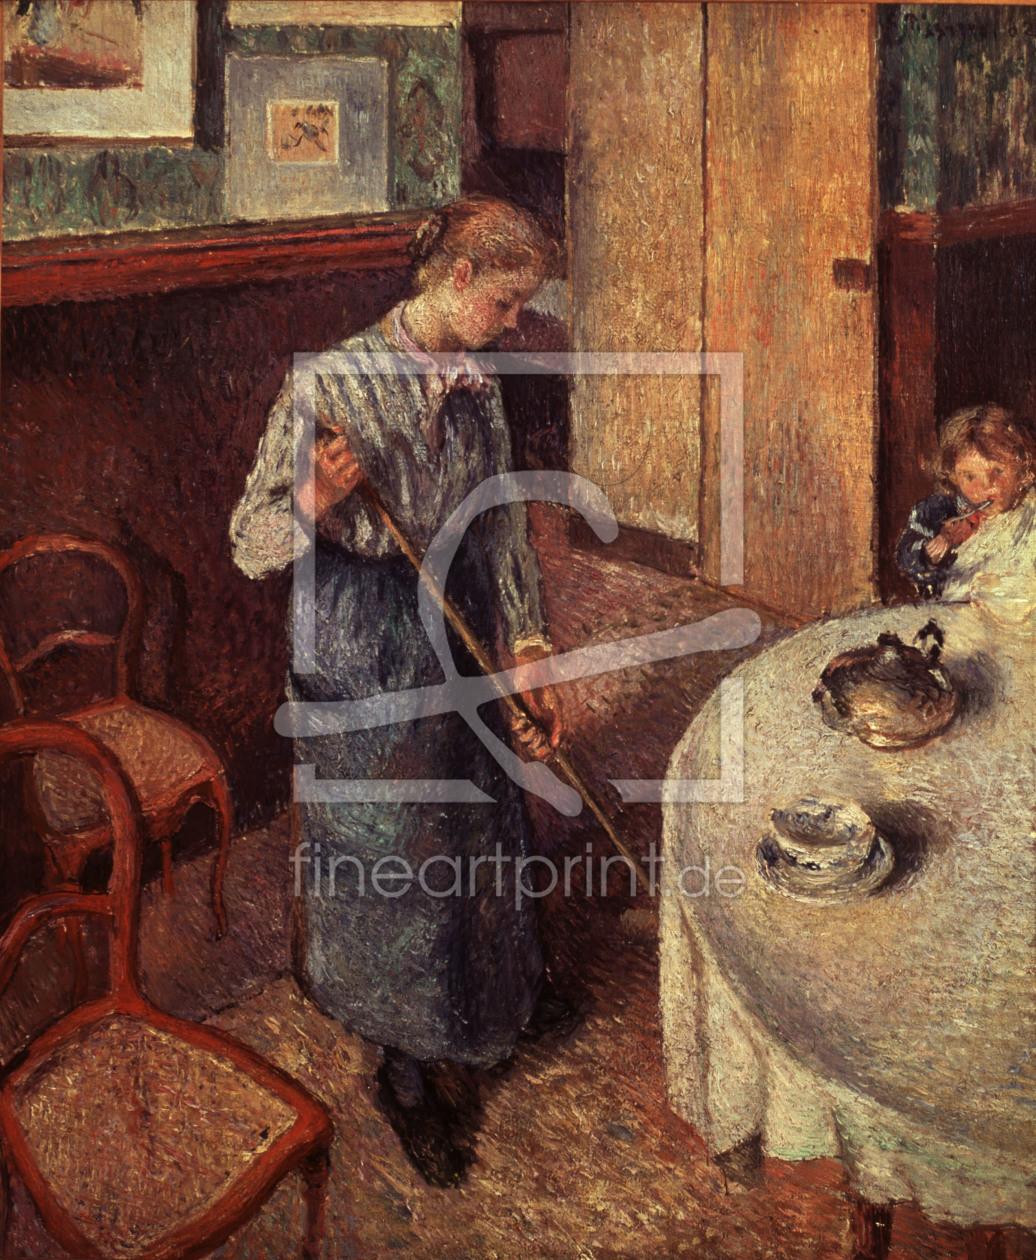 Bild-Nr.: 30006142 C.Pissarro / The Maid / 1882 erstellt von Pissarro, Camille